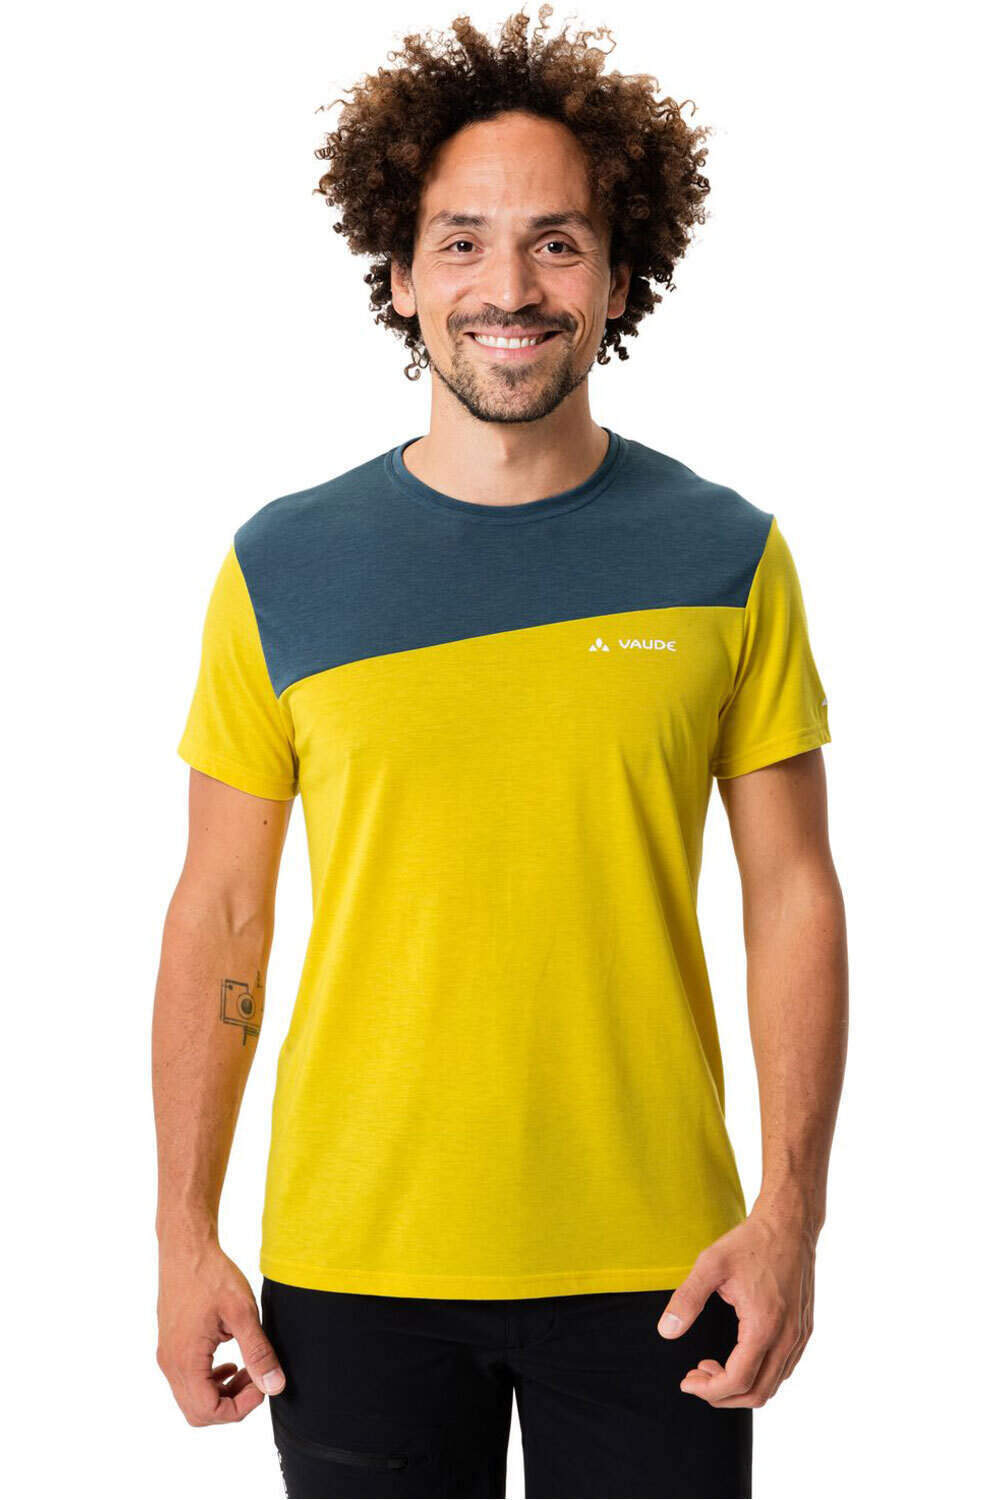 Vaude camiseta montaña manga corta hombre Men's Sveit Shirt vista frontal